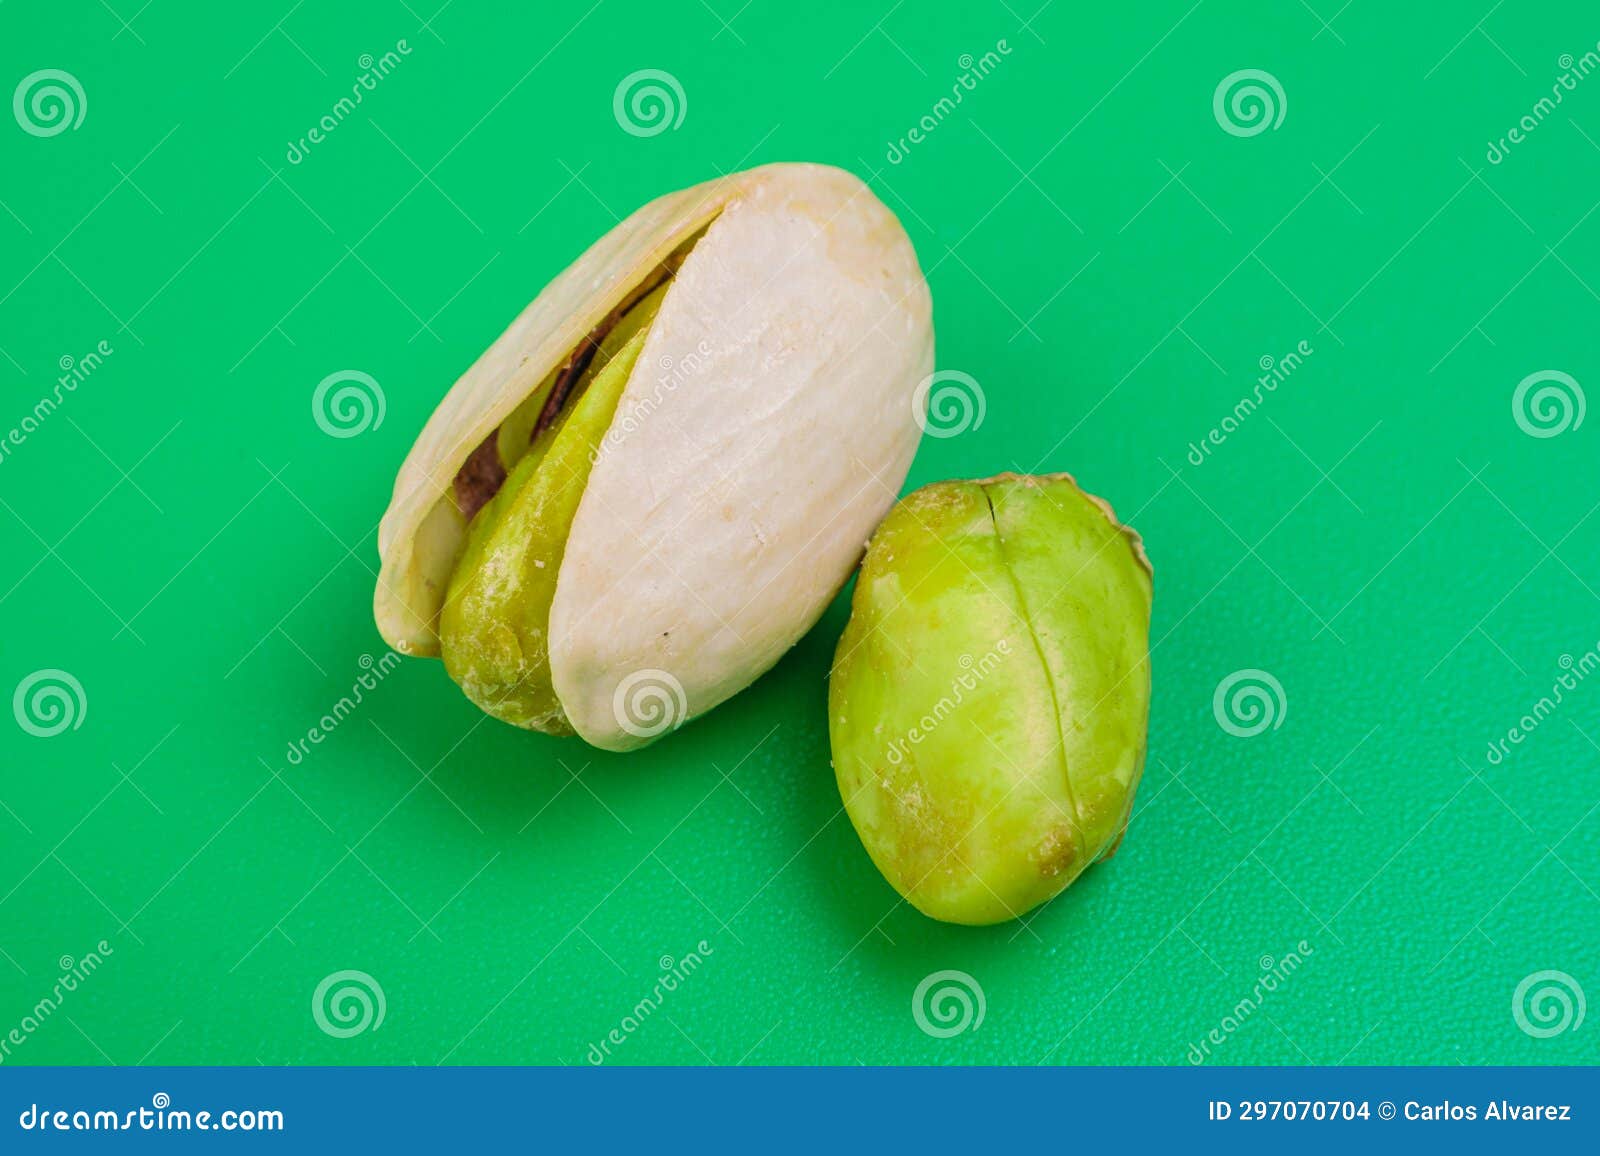 pistacho abierto con otro fruto al lado sobre fondo verde